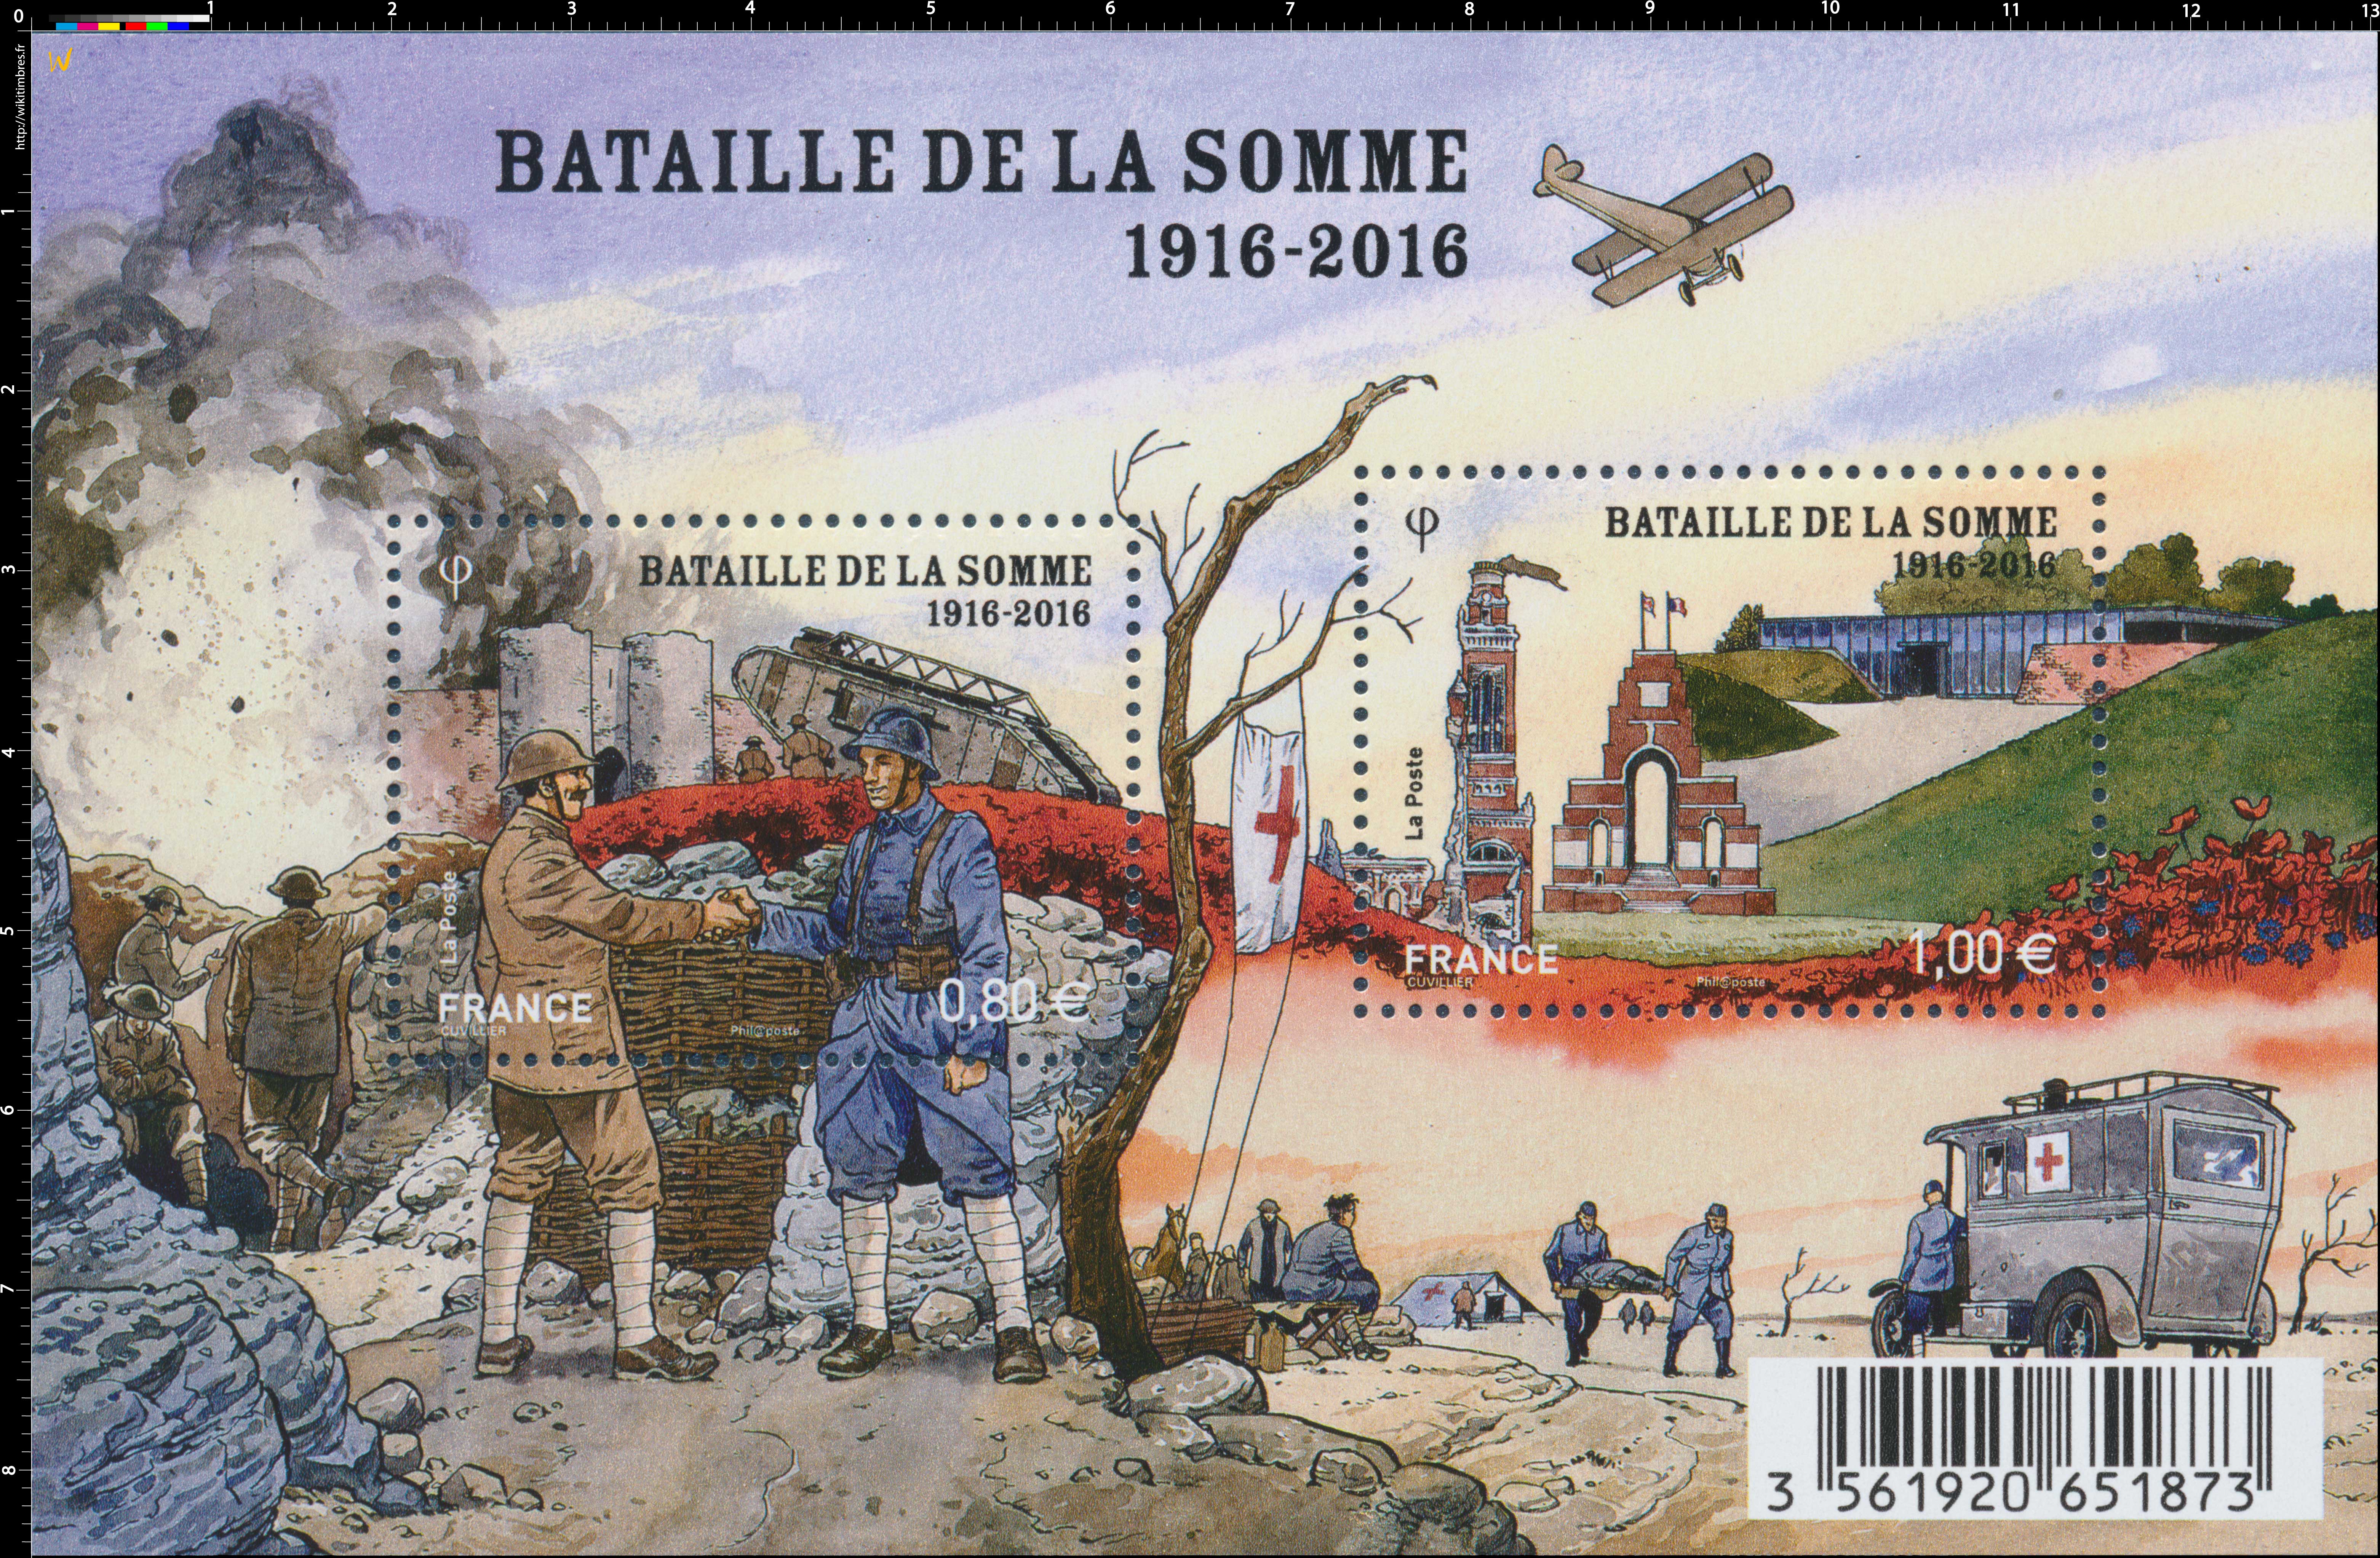 2016 BATAILLE DE LA SOMME 1916-2016